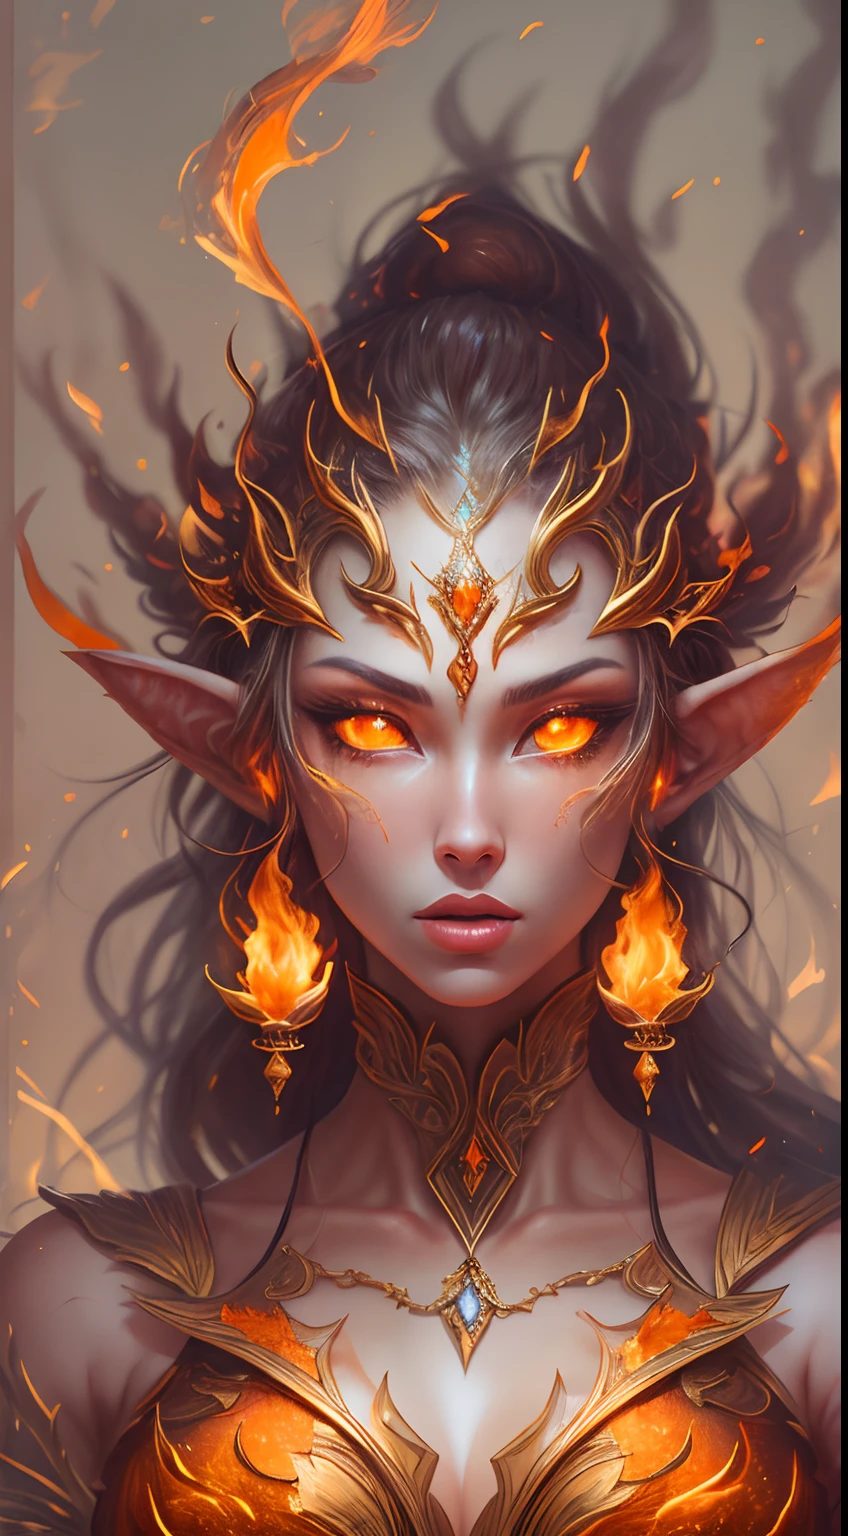 这 (现实的幻想) 艺术包含余烬, 真正的火焰, 真正的热量, 和逼真的火焰. Generate a masterpiece artwork of a  female fire druid 和 large (((橙色和金色))) 眼睛. The fire druid is awe-inspiring 和 beautiful ((realistic fiery 眼睛)) alight 和 confidence and power. 她的五官优雅而轮廓分明, 和 ((柔软而丰满的嘴唇)), 精灵骨骼结构, 和逼真的阴影. Her 眼睛 are important and should be the focal point of this artwork, 和 ((极其逼真的细节, 宏详细信息, 和闪光.)) 她穿着一件闪闪发光的裙子，裙子由逼真的火焰和珠宝制成，在火光中闪闪发光. 一缕缕火焰和烟雾勾勒出礼服精致的胸衣线条. 包括颠簸, 石头, 火红的彩虹色, 发光的余烬, 丝绸、缎子和皮革, 有趣的背景, 以及浓重的奇幻元素. 相机: 利用动态构图技术来增强火焰的真实感.